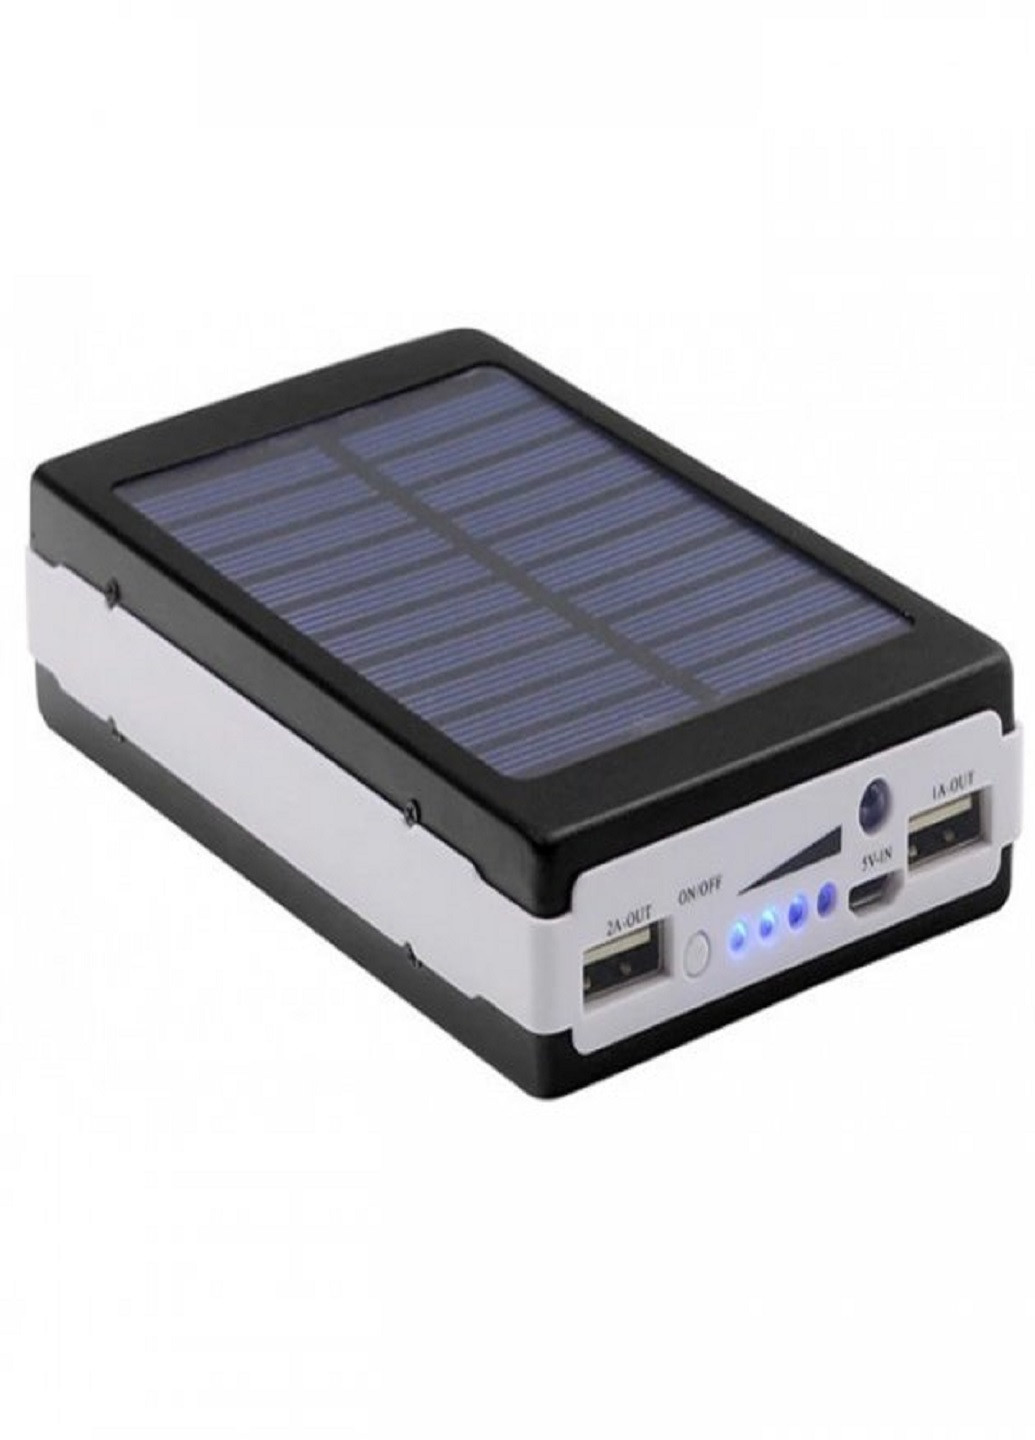 Power Bank Solar 90000 mAh мобильное зарядное с солнечной панелью и лампой (павербанк) VTech